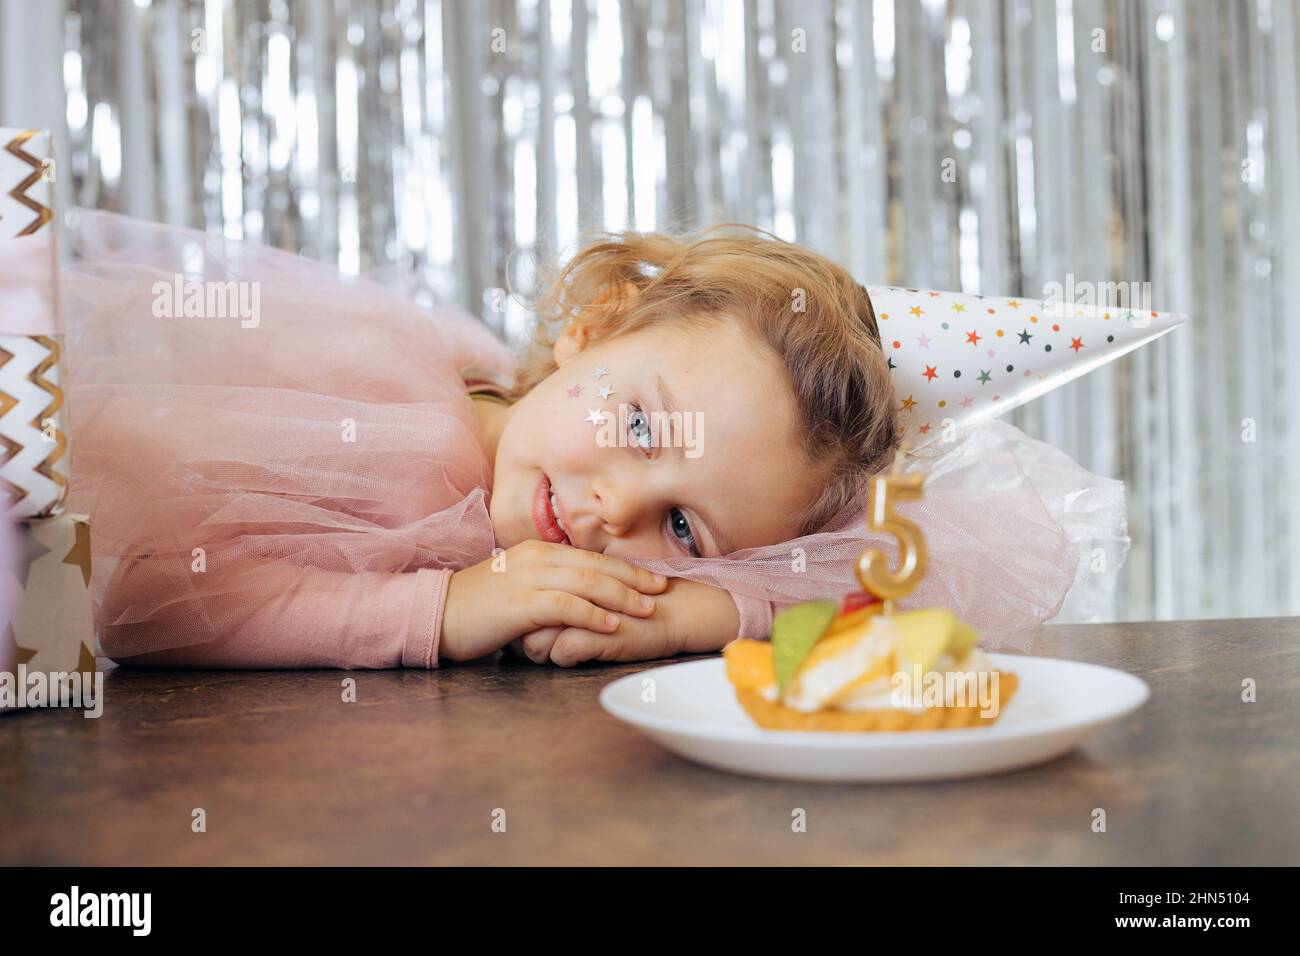 Kleines lächelndes Mädchen mit kurzen lockigen Haaren und Sternen im Gesicht in rosa poofy Kleid und Kappe legte den Kopf auf den Tisch faltende Hände. Stockfoto